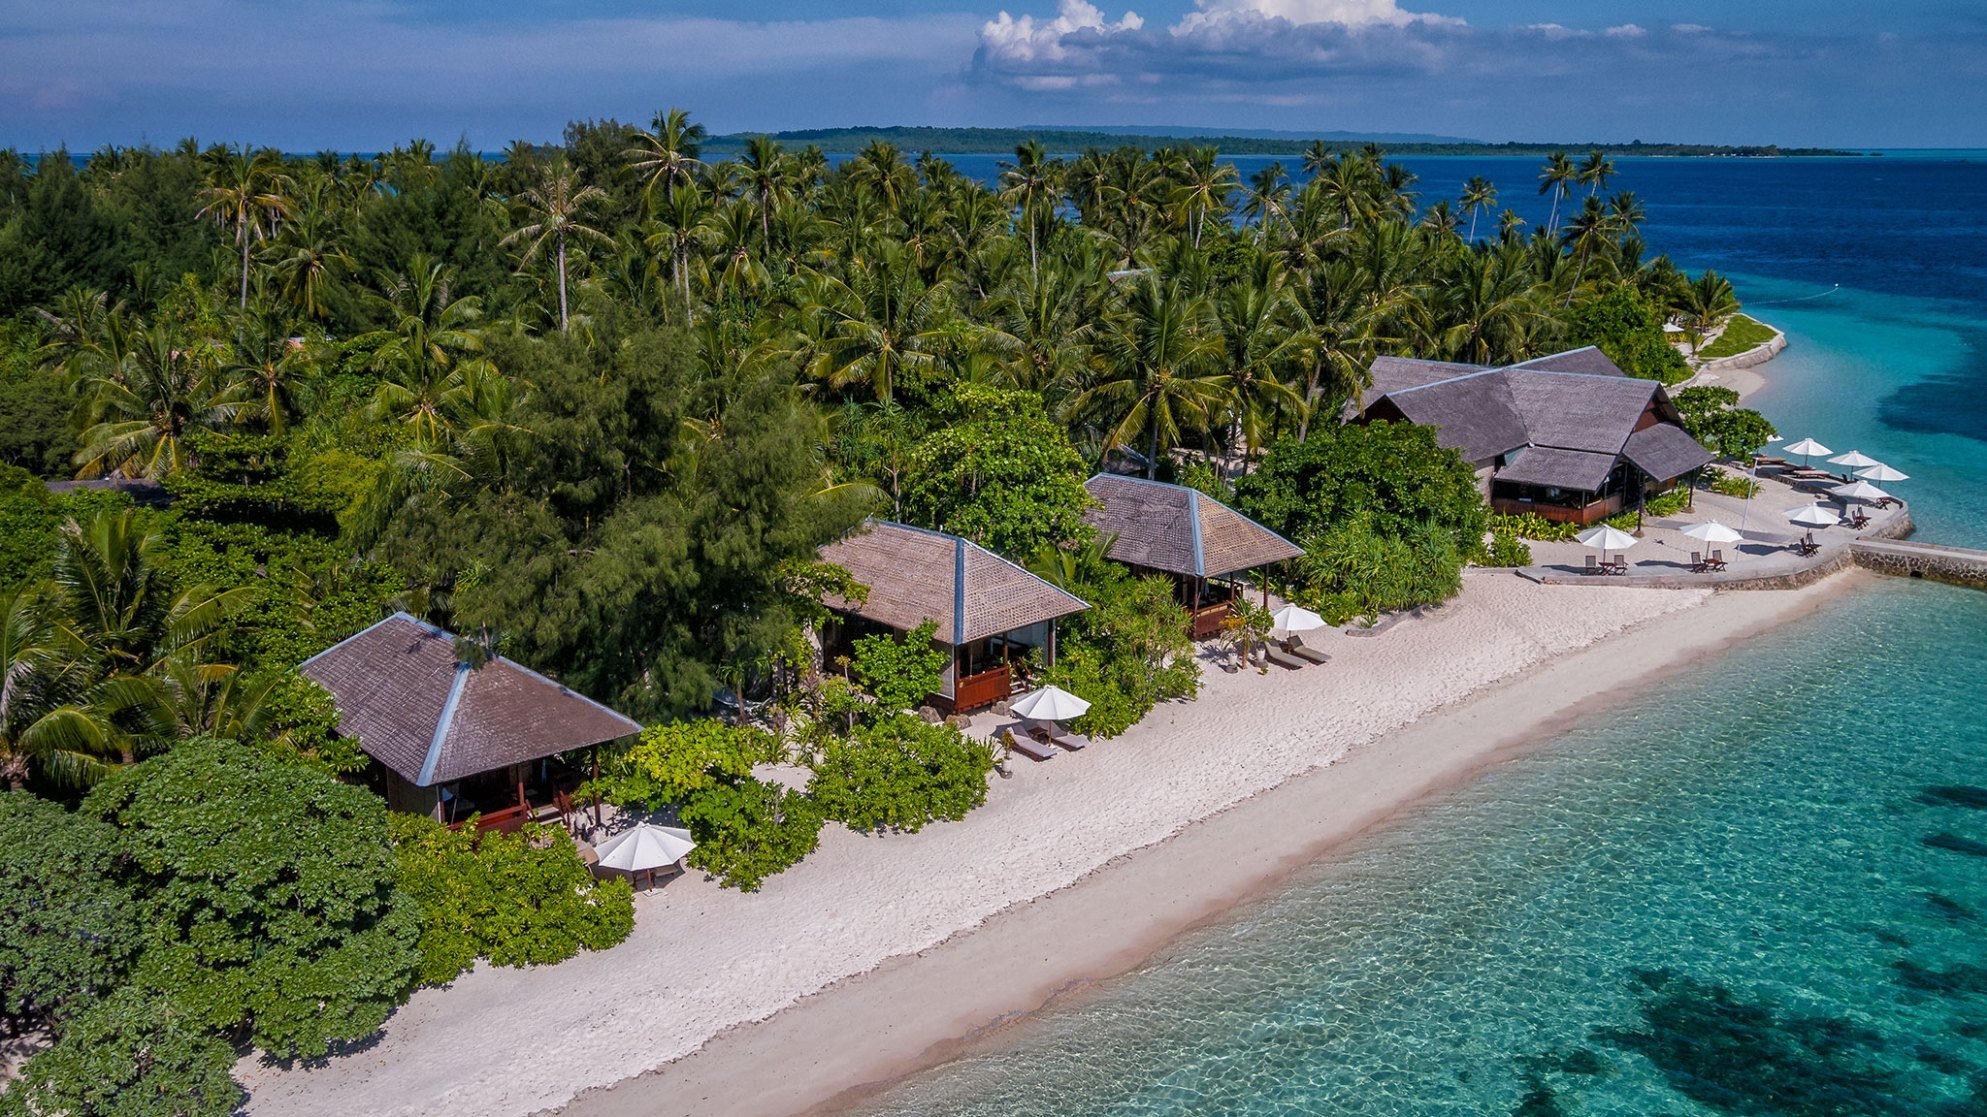 Bouwsteen 8 dagen duiken luxe Wakatobi Dive Resort